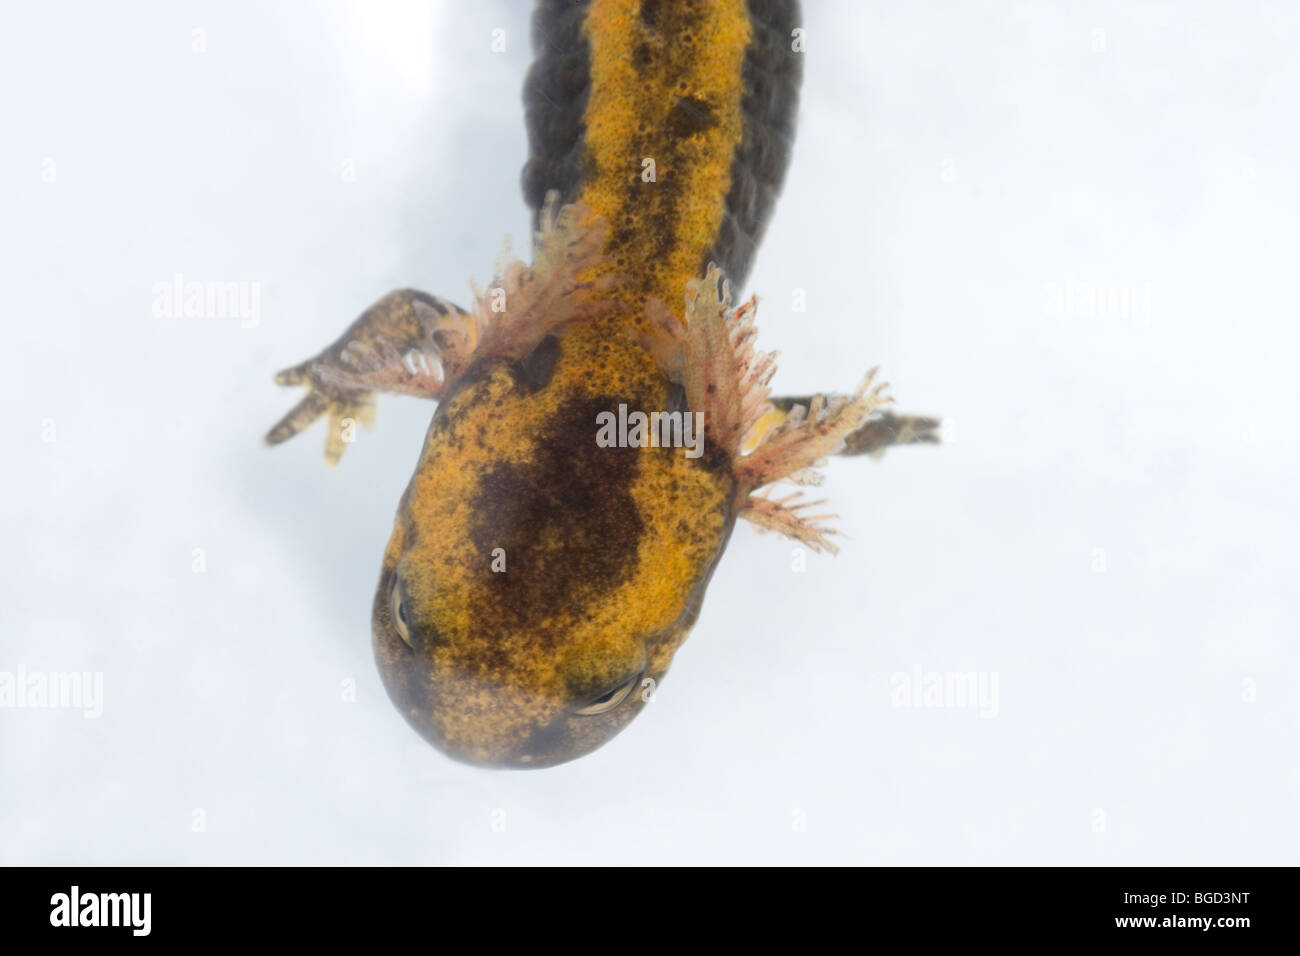 Europäische Feuersalamander (Salamandra Salamandrs). Larve oder Kaulquappe zeigt äußere Kiemen zur Atmung im Wasser. Stockfoto